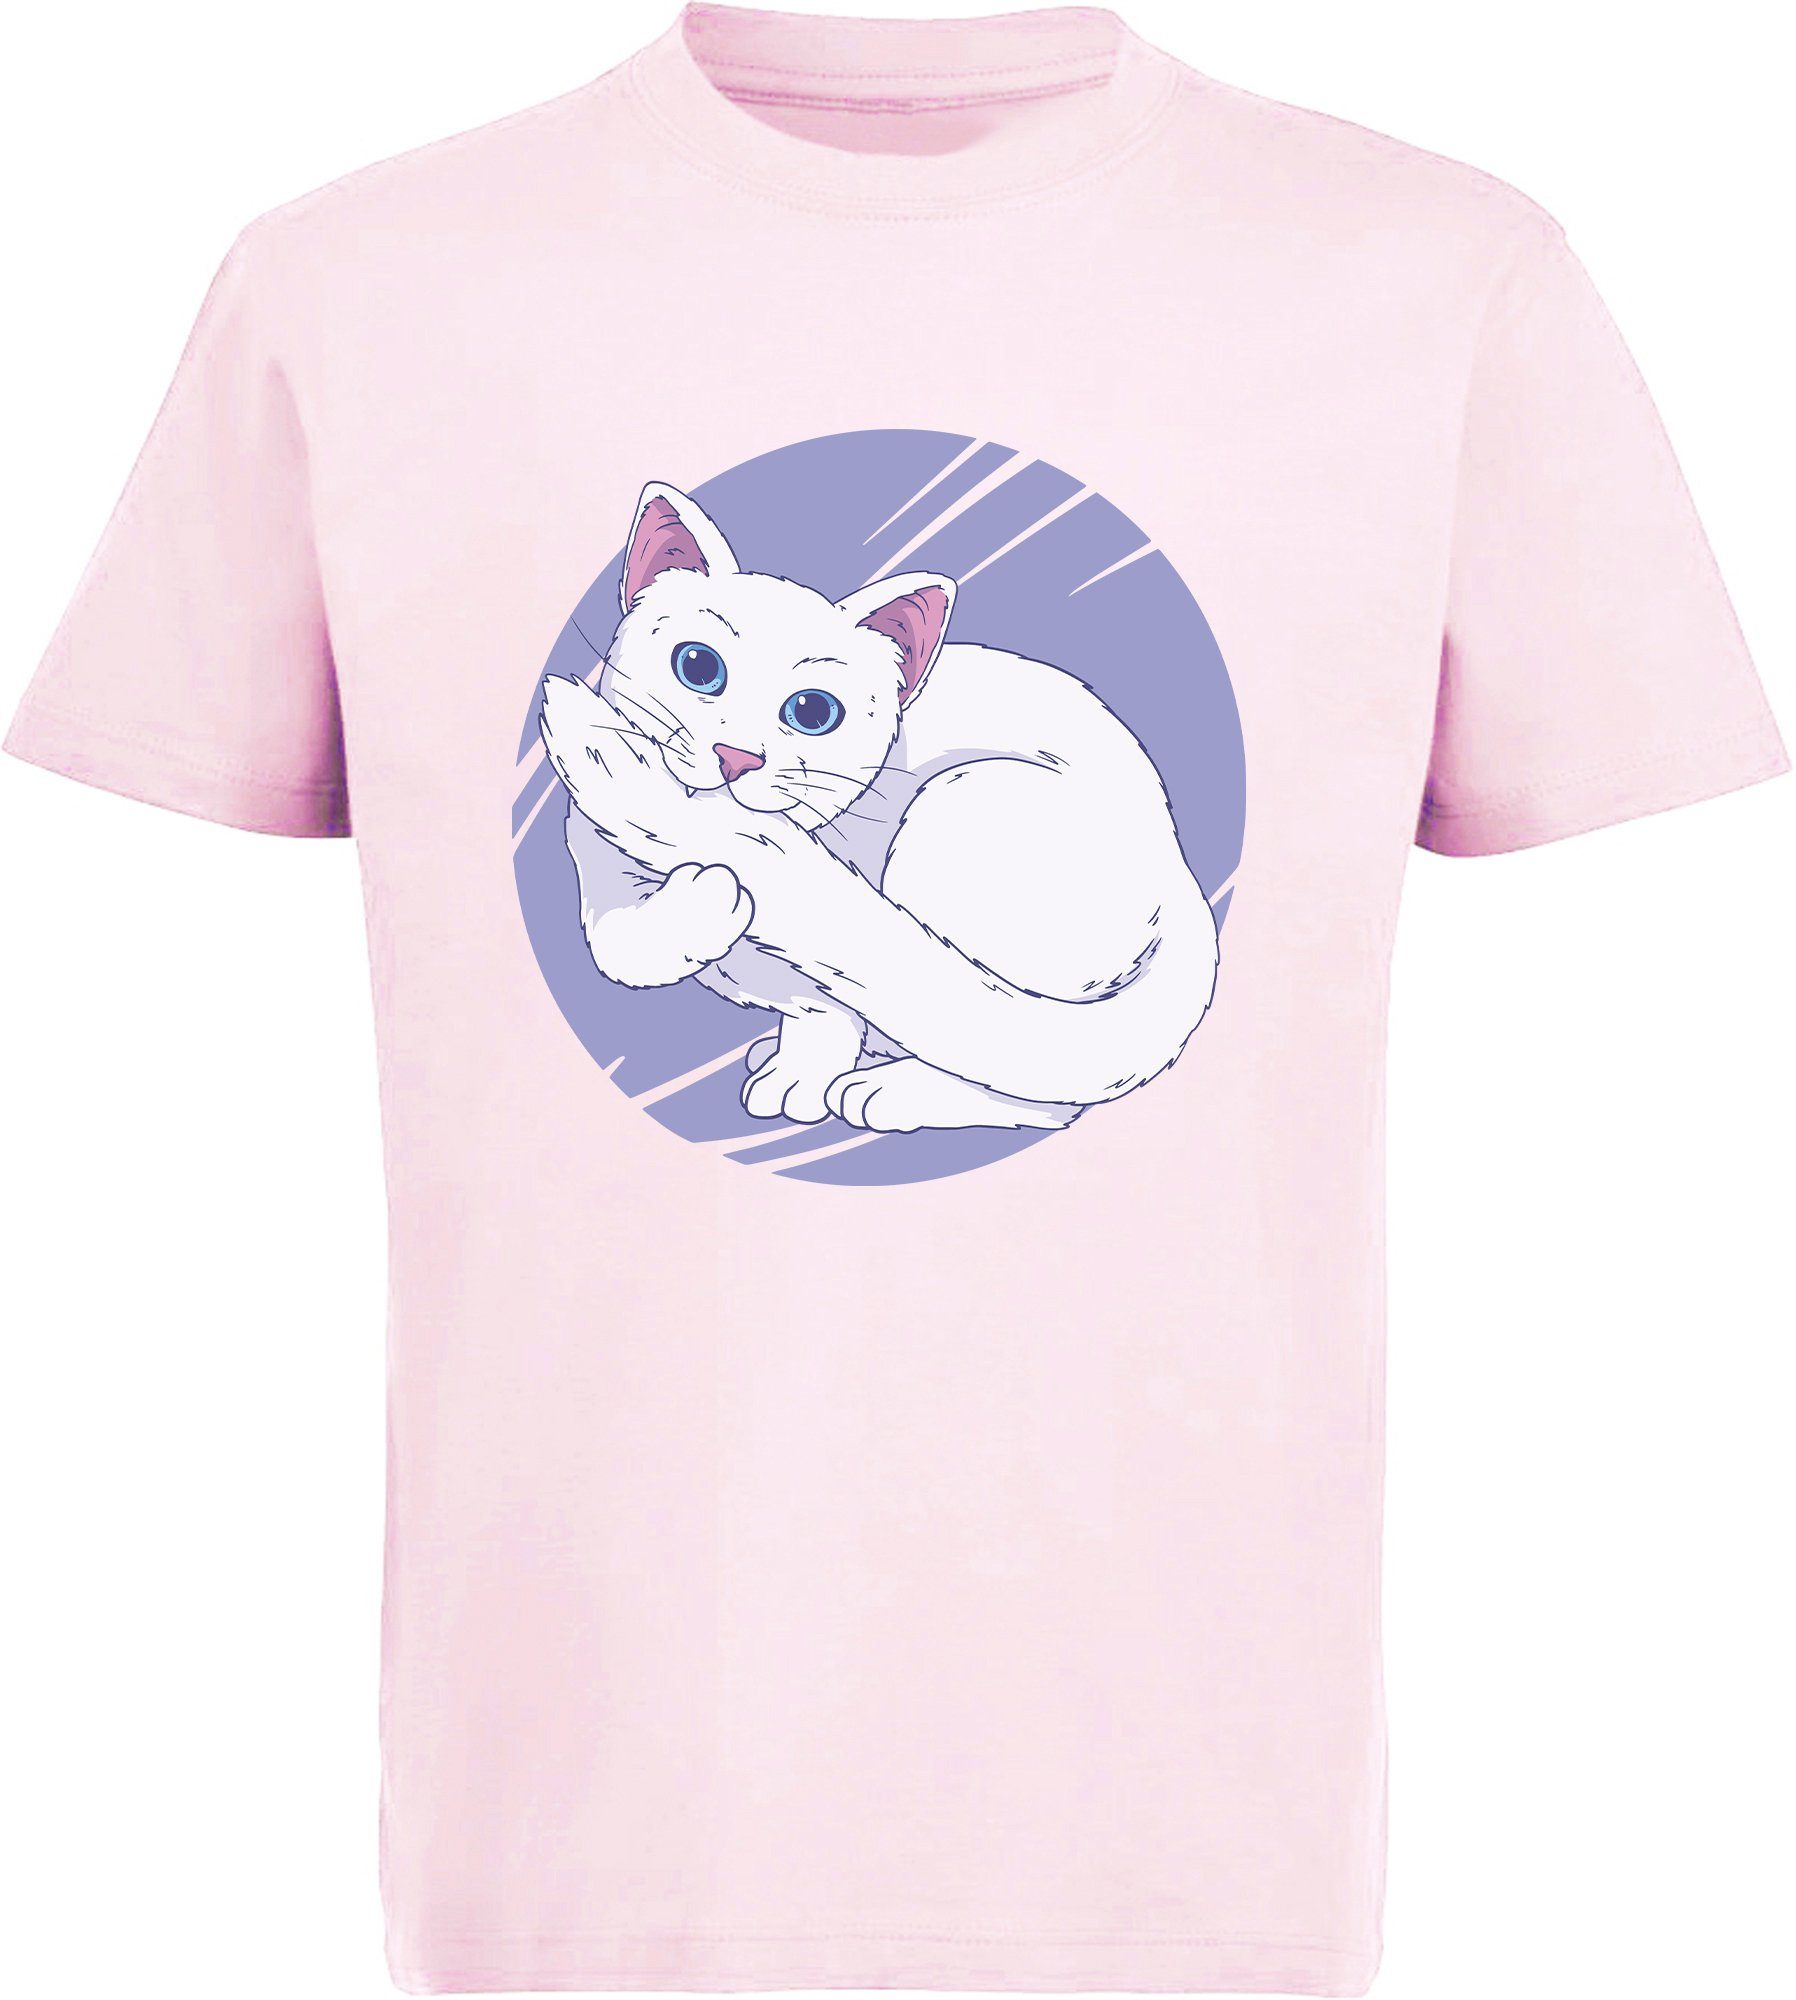 MyDesign24 Print-Shirt bedrucktes Mädchen T-Shirt weiße Katze die in Ihren Schwanz beißt Baumwollshirt mit Aufdruck, weiß, schwarz, rot, rosa, i127 | T-Shirts